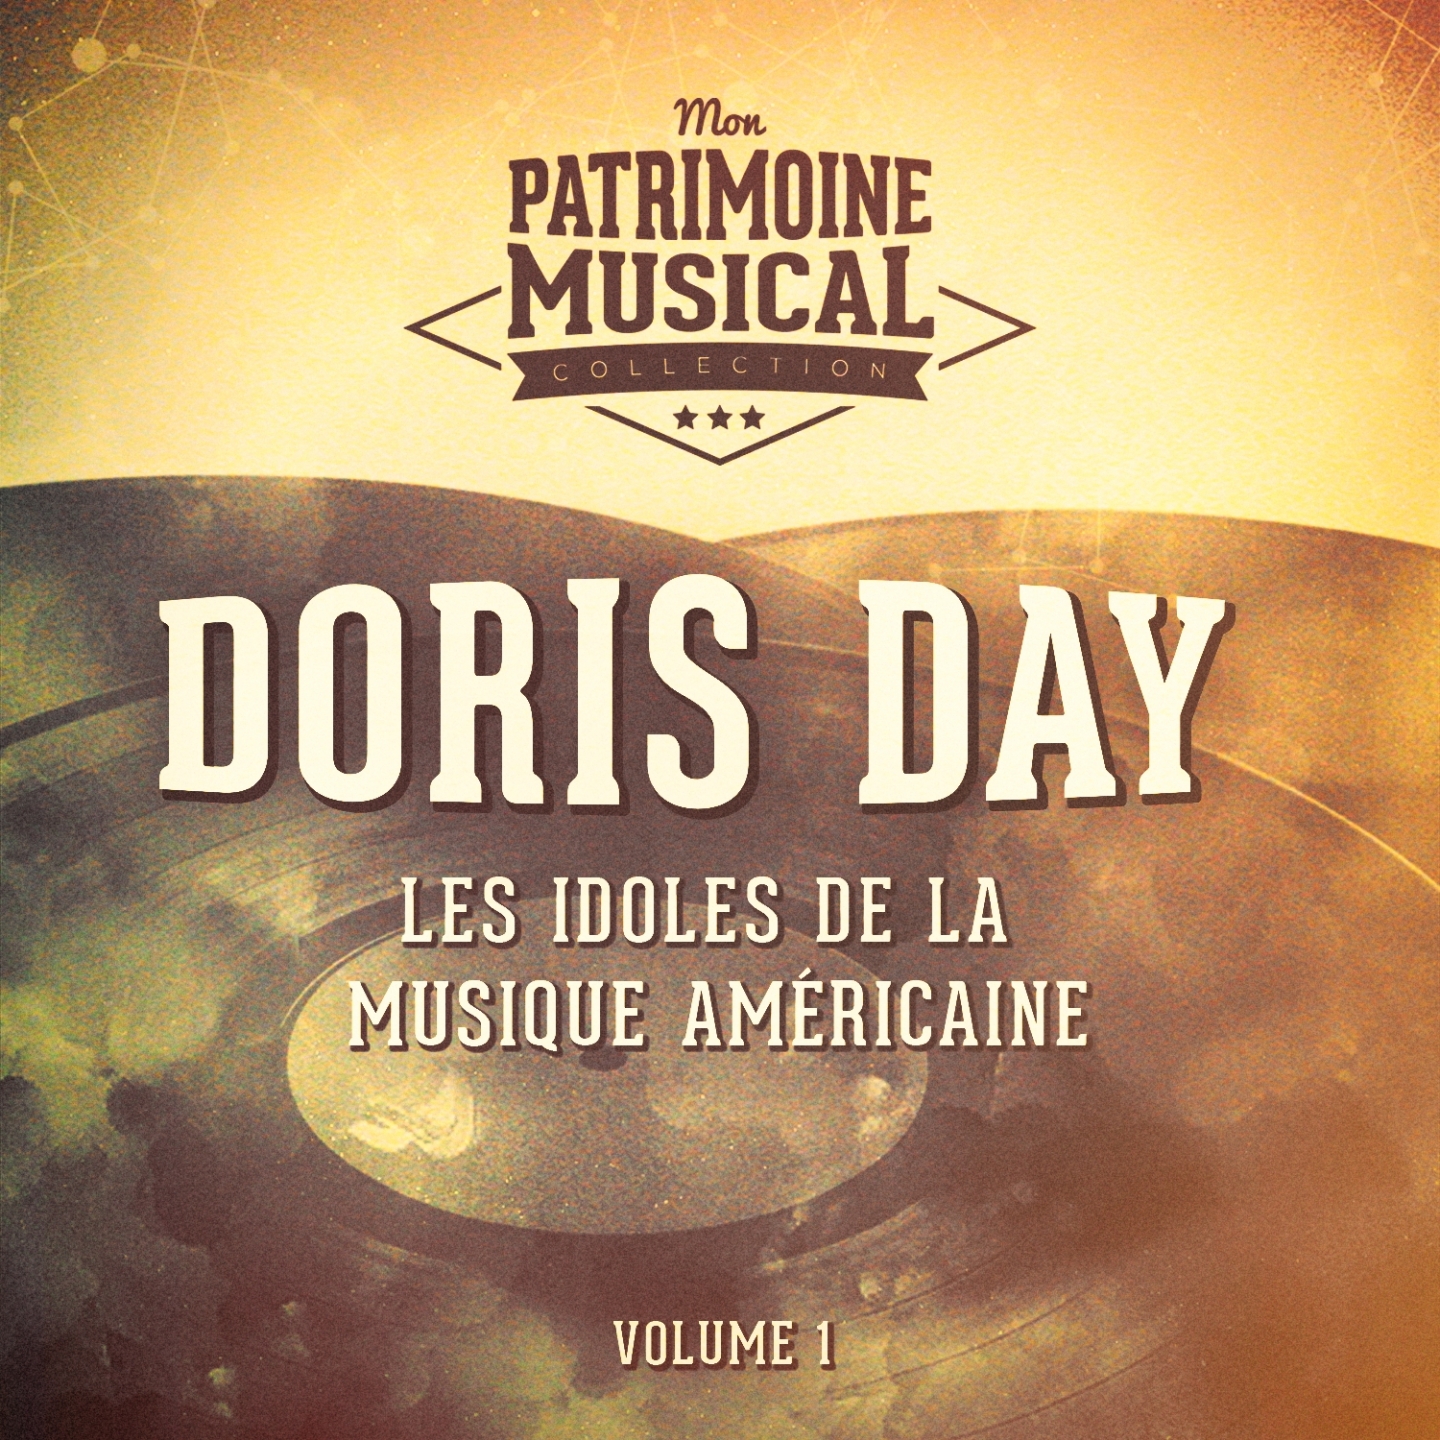 Les idoles de la musique américaine : Doris Day, Vol. 1